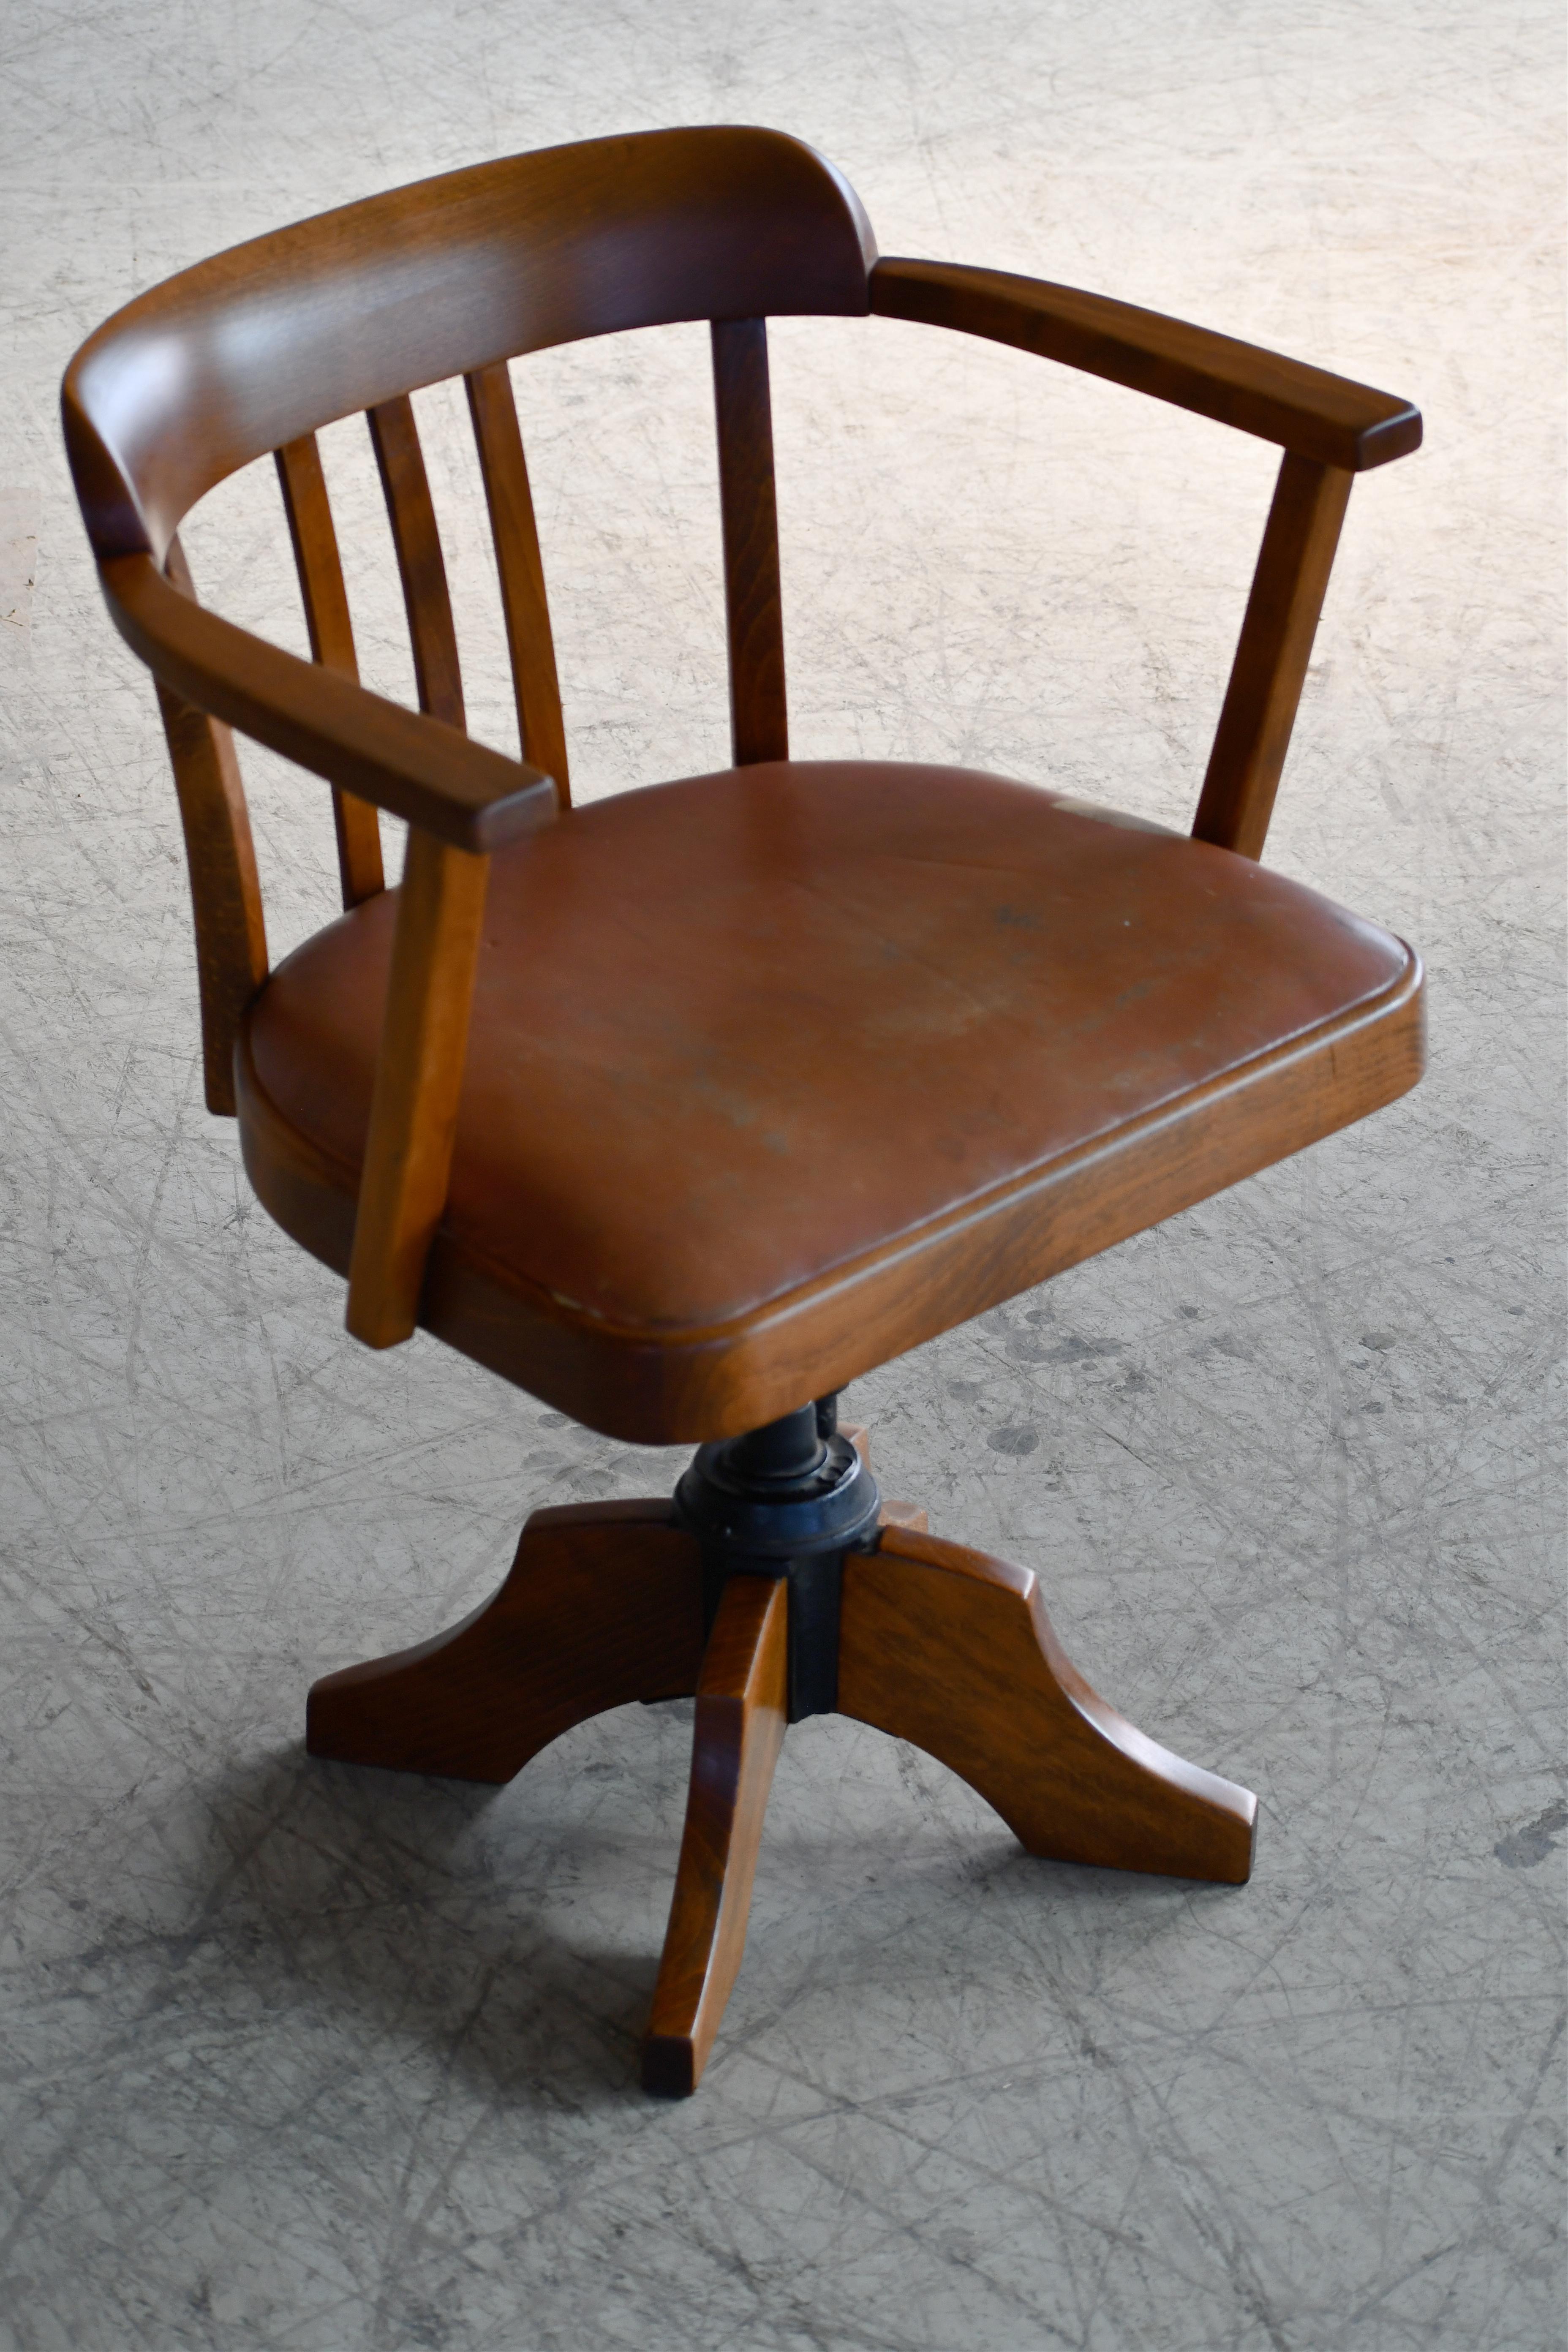 Scandinavian Modern Danish 1920s Swivel Desk Chair in Solid Oak with Leather Seat